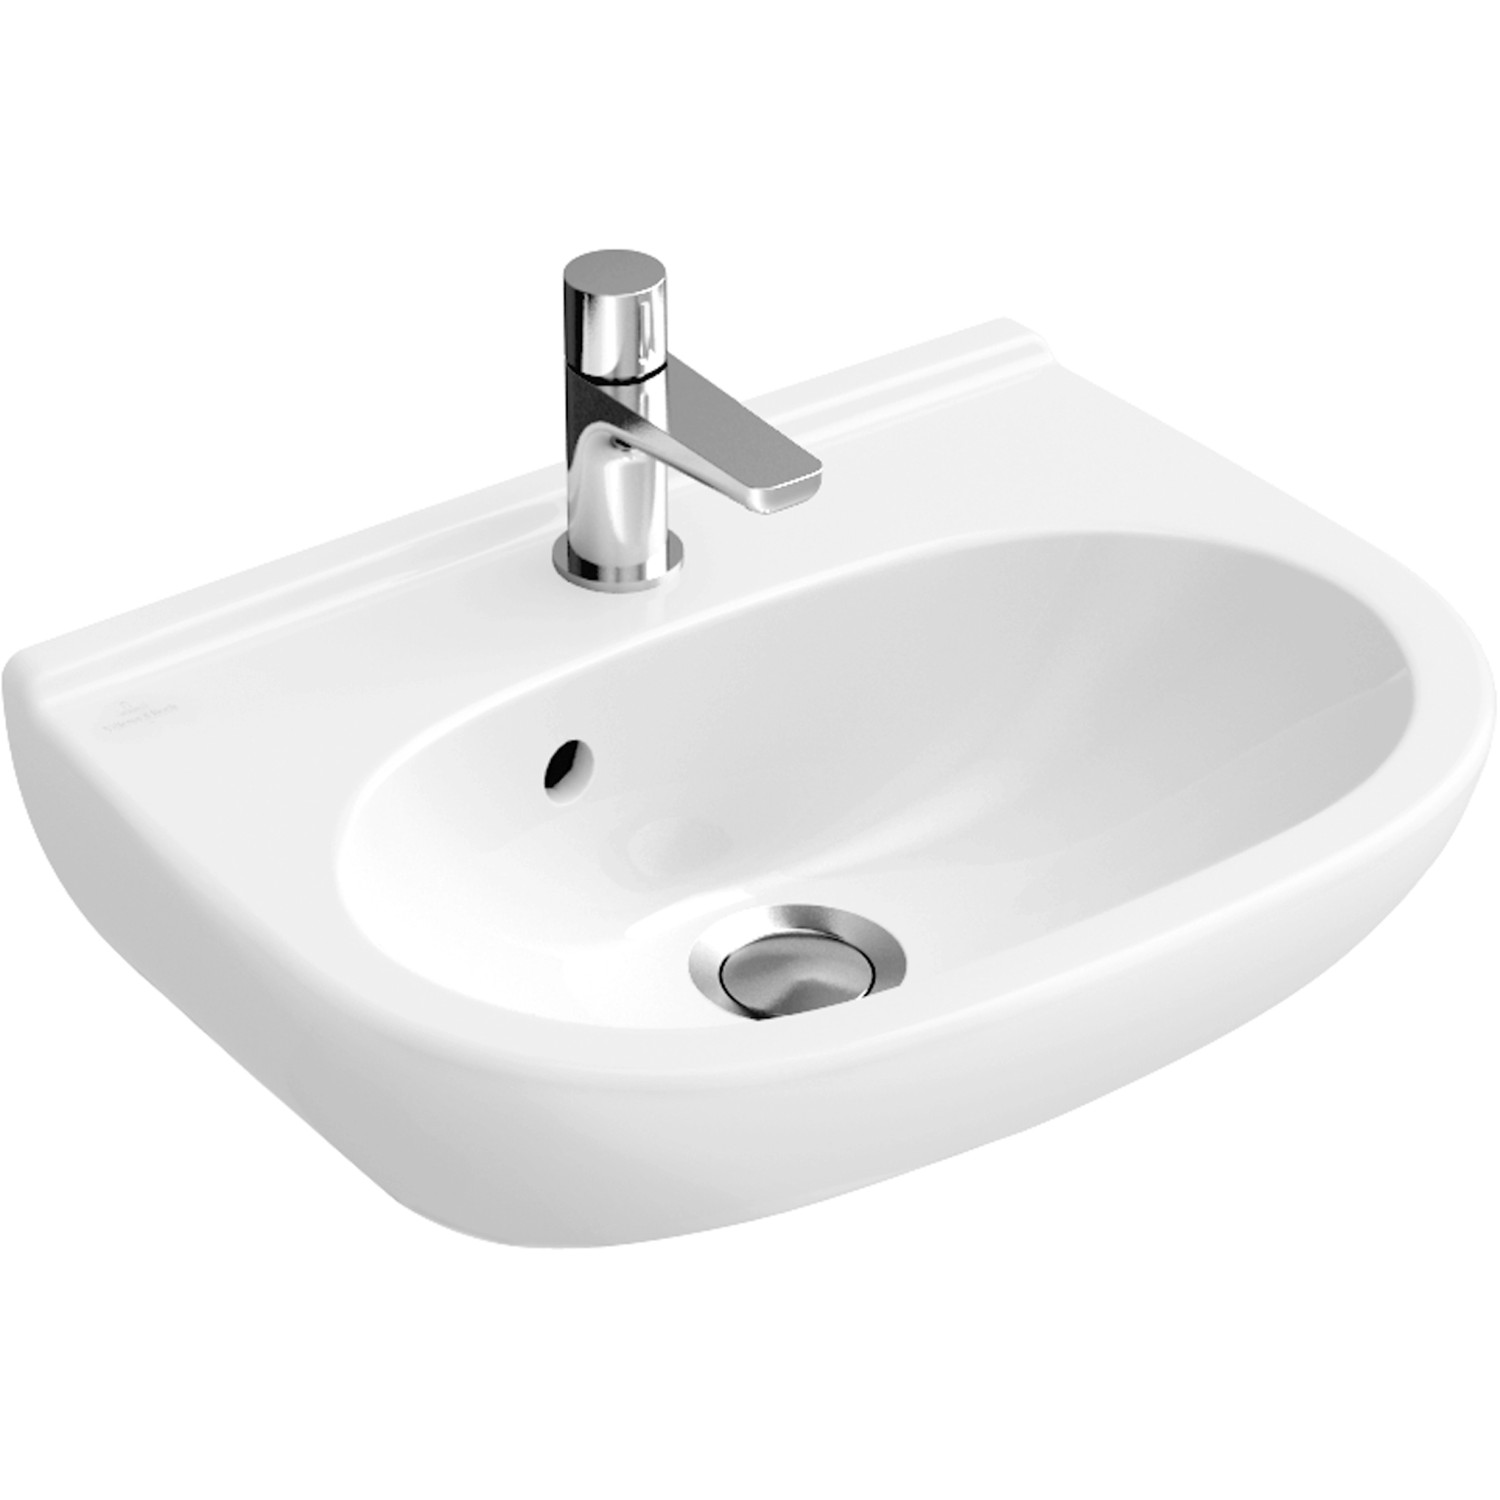 Villeroy & Boch Handwaschbecken compact O.Novo 50 cm Weiß mit HL ohne ÜL CPlus